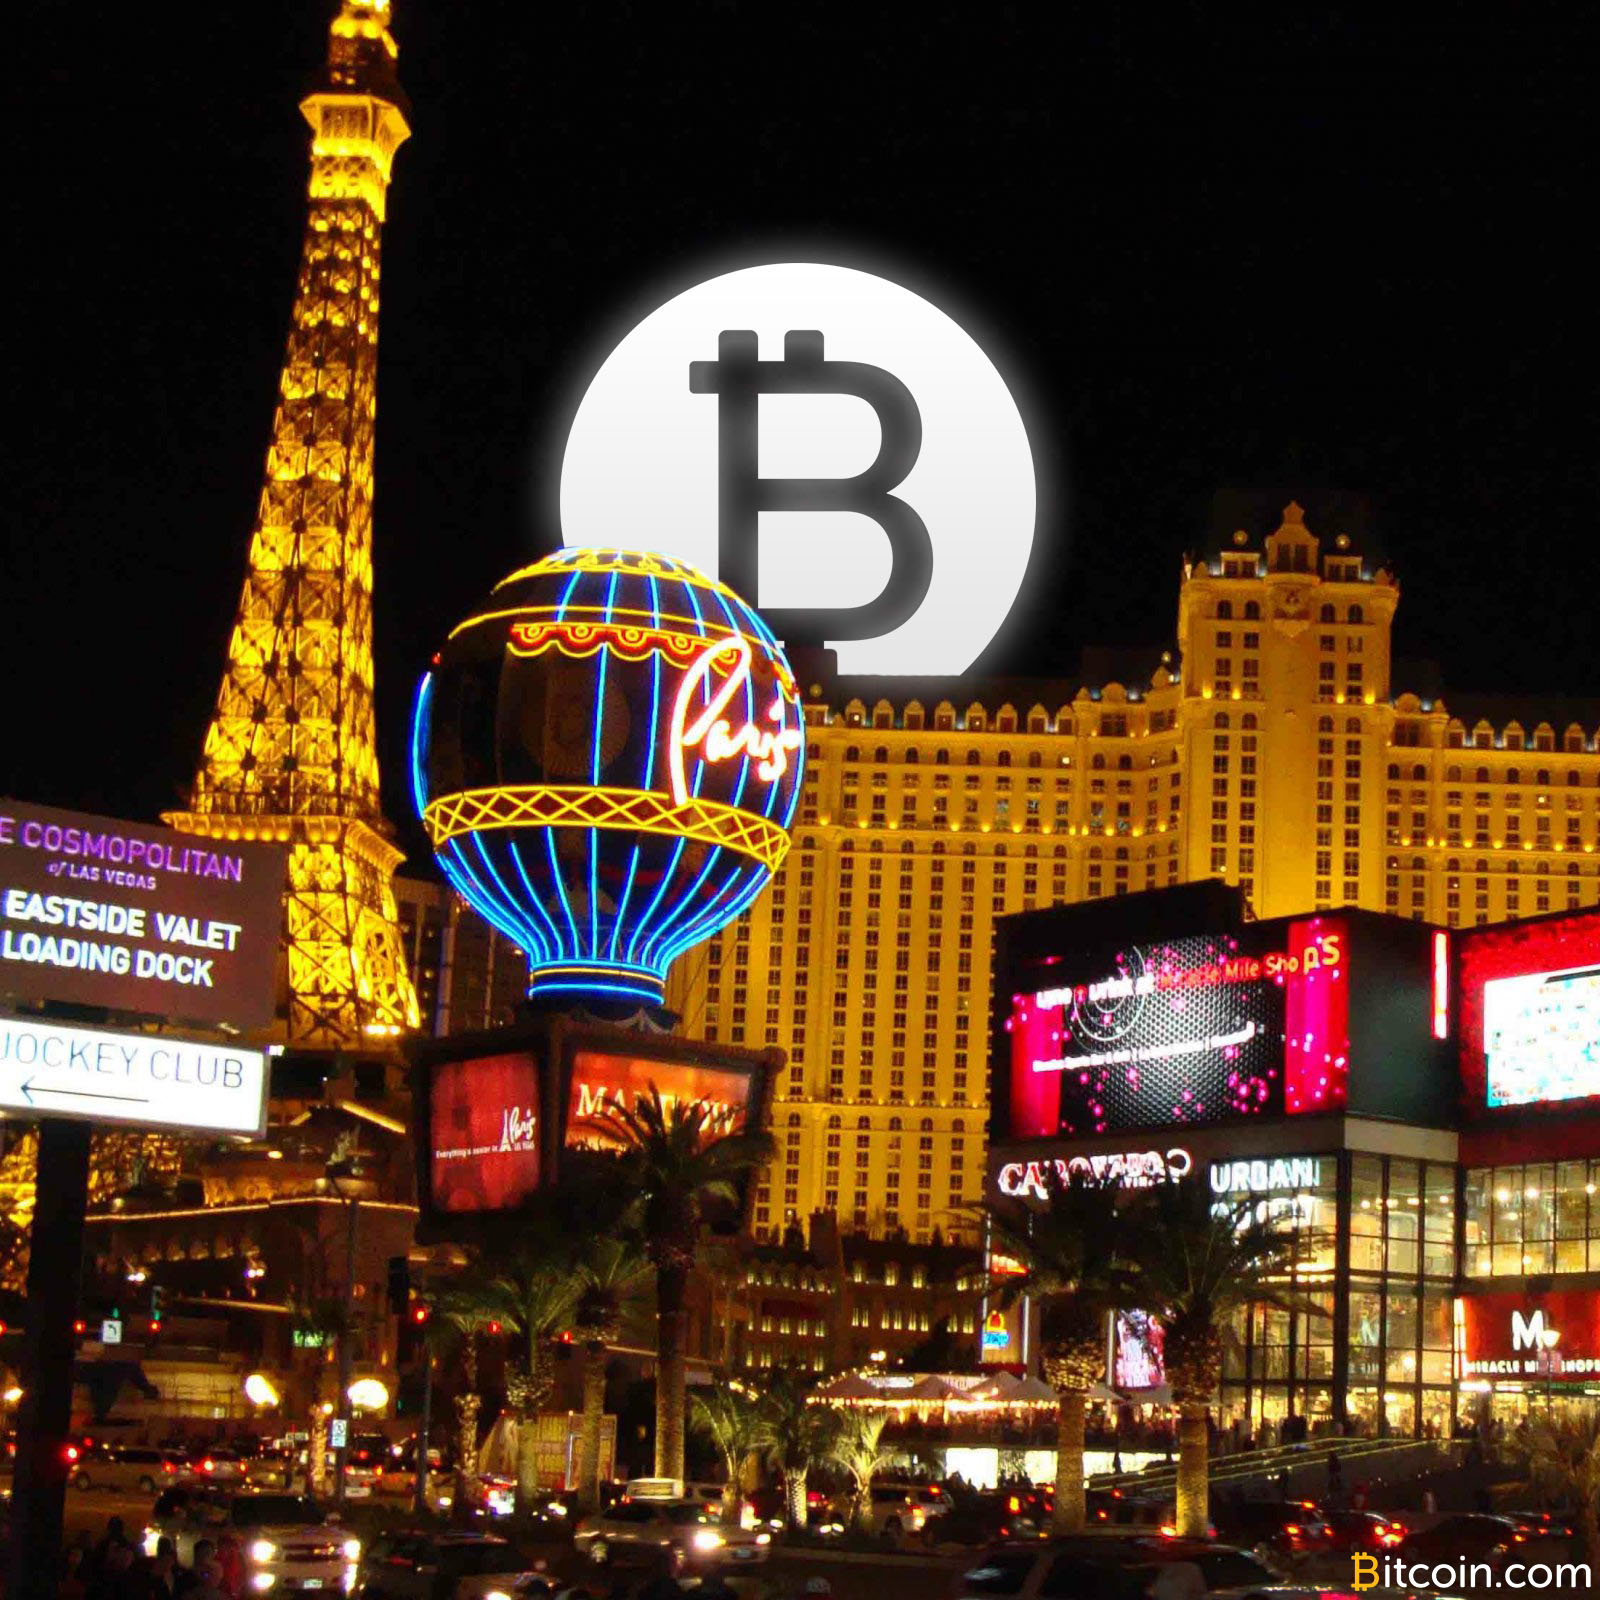 Du Las Vegaso kazino priimti Bitcoin, bet ne lošimo kambaryje